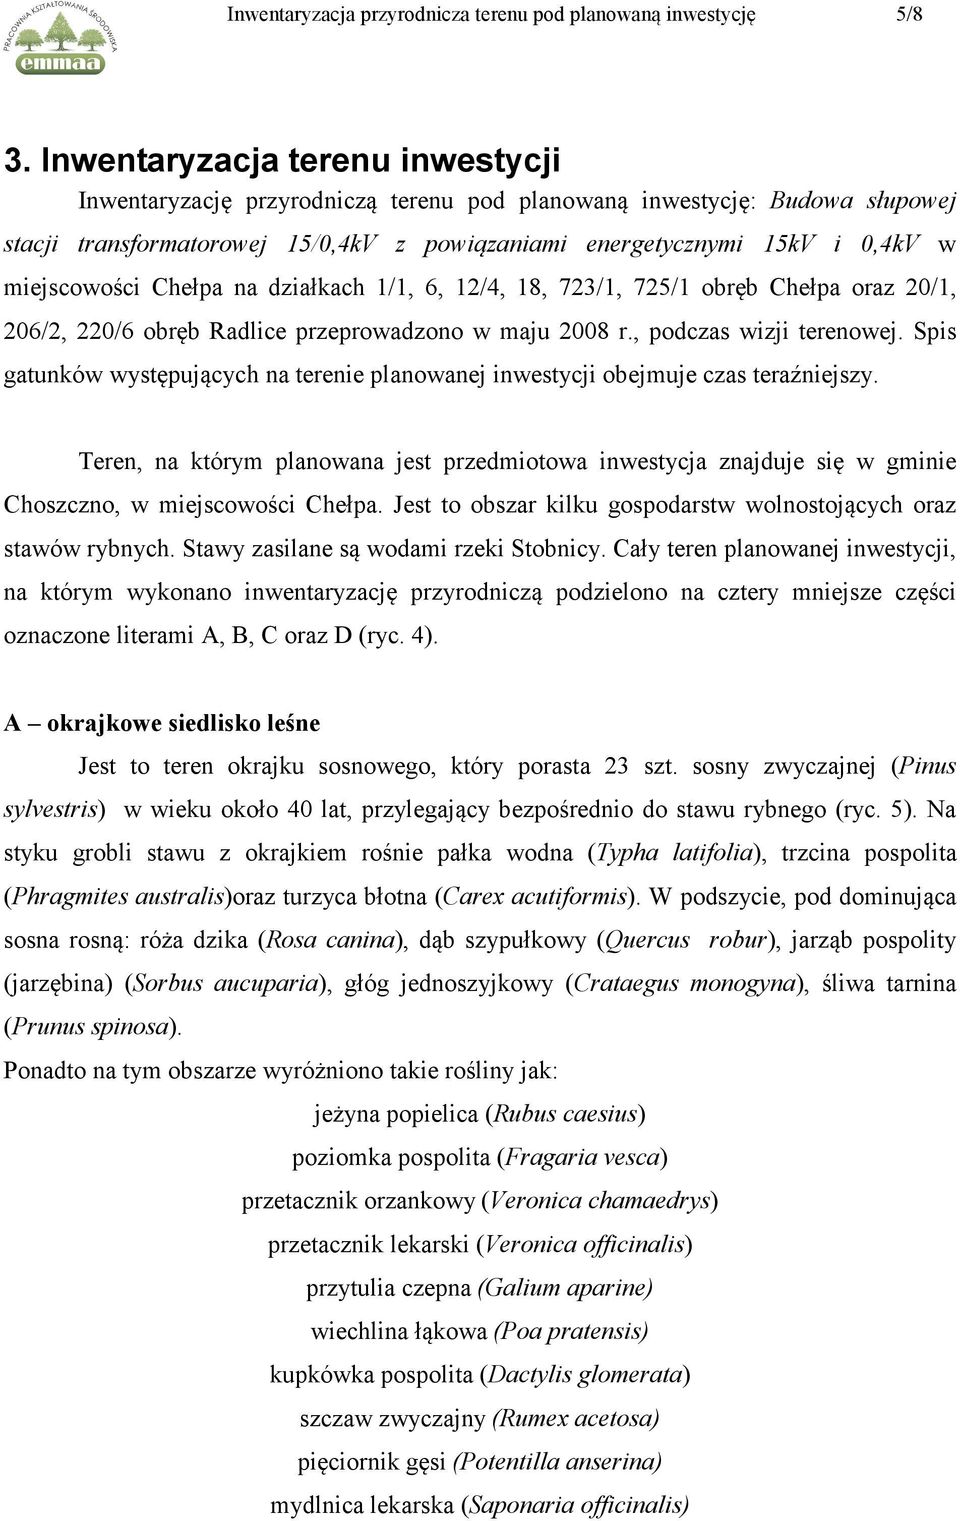 miejscowości Chełpa na działkach 1/1, 6, 12/4, 18, 723/1, 725/1 obręb Chełpa oraz 20/1, 206/2, 220/6 obręb Radlice przeprowadzono w maju 2008 r., podczas wizji terenowej.